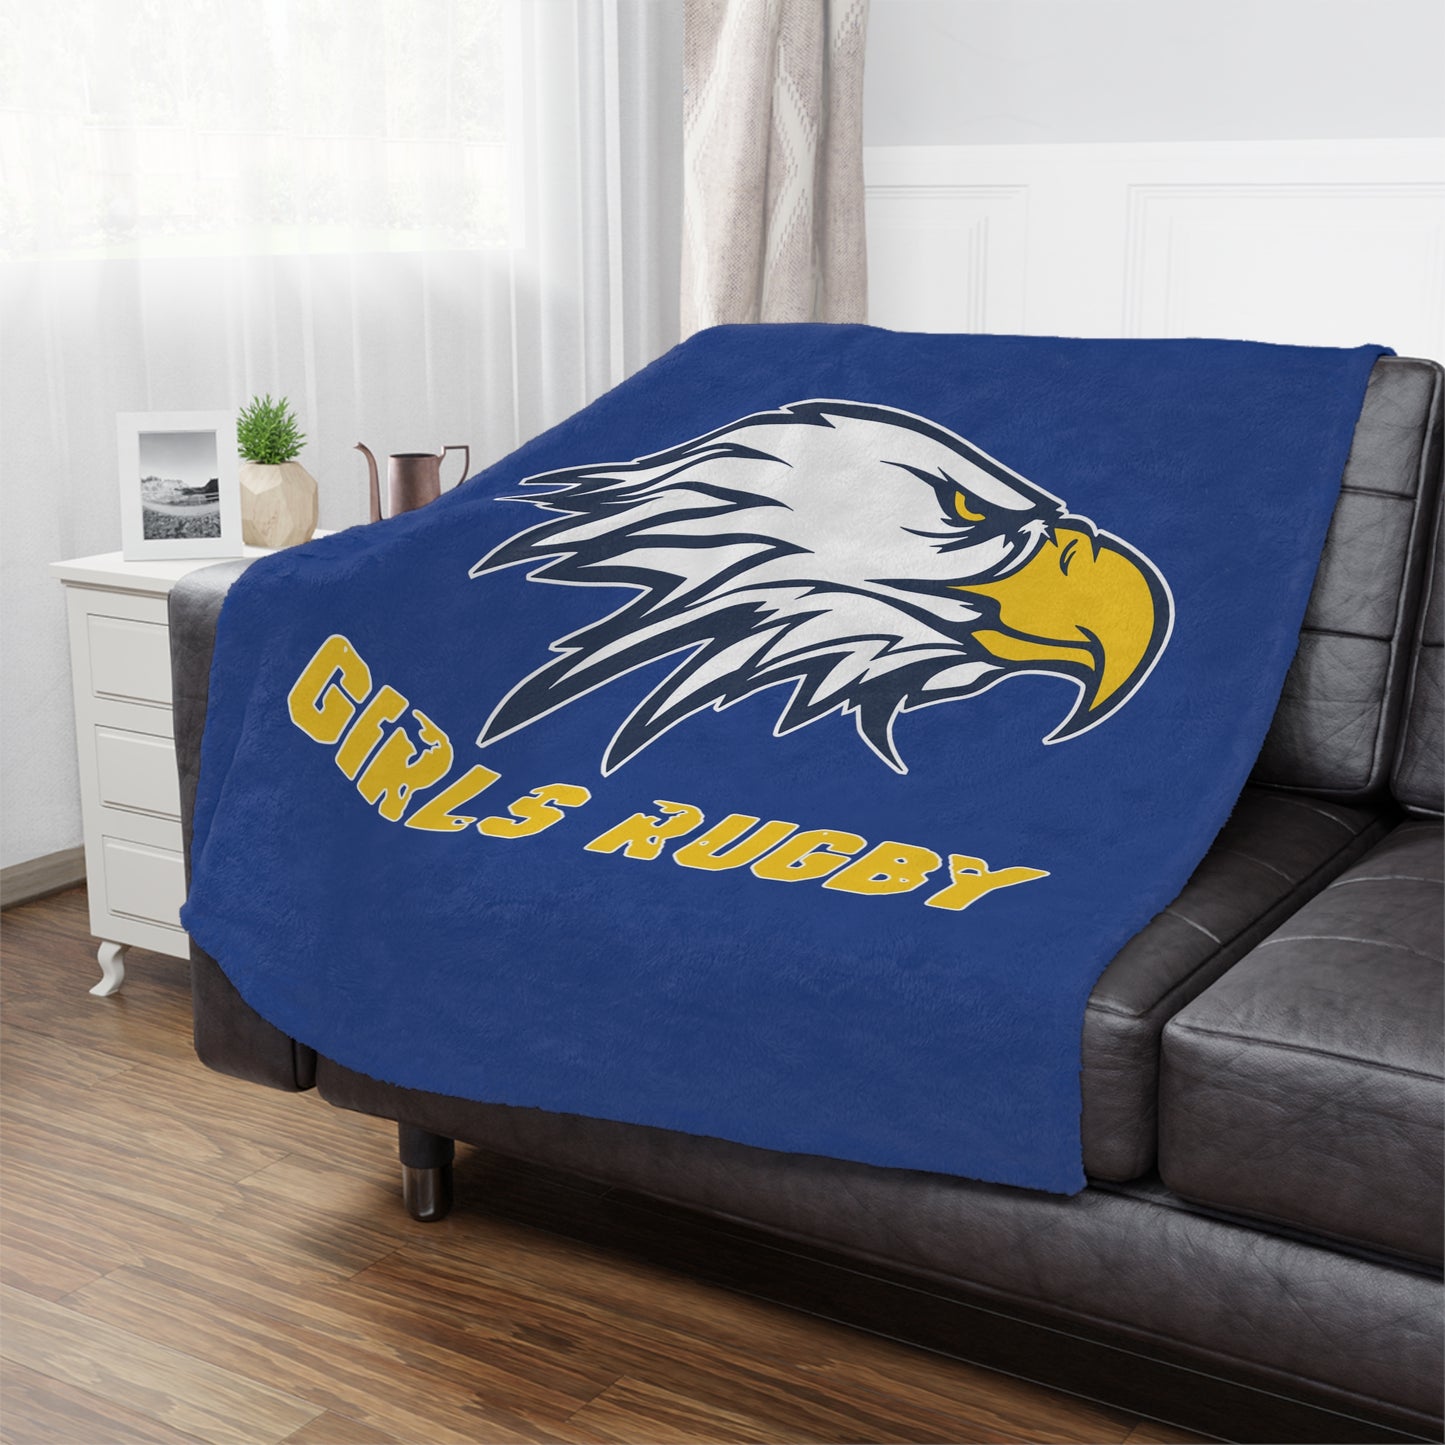 Super Soft Minky Blanket | Cincinnati Girls Rugby Logo Color